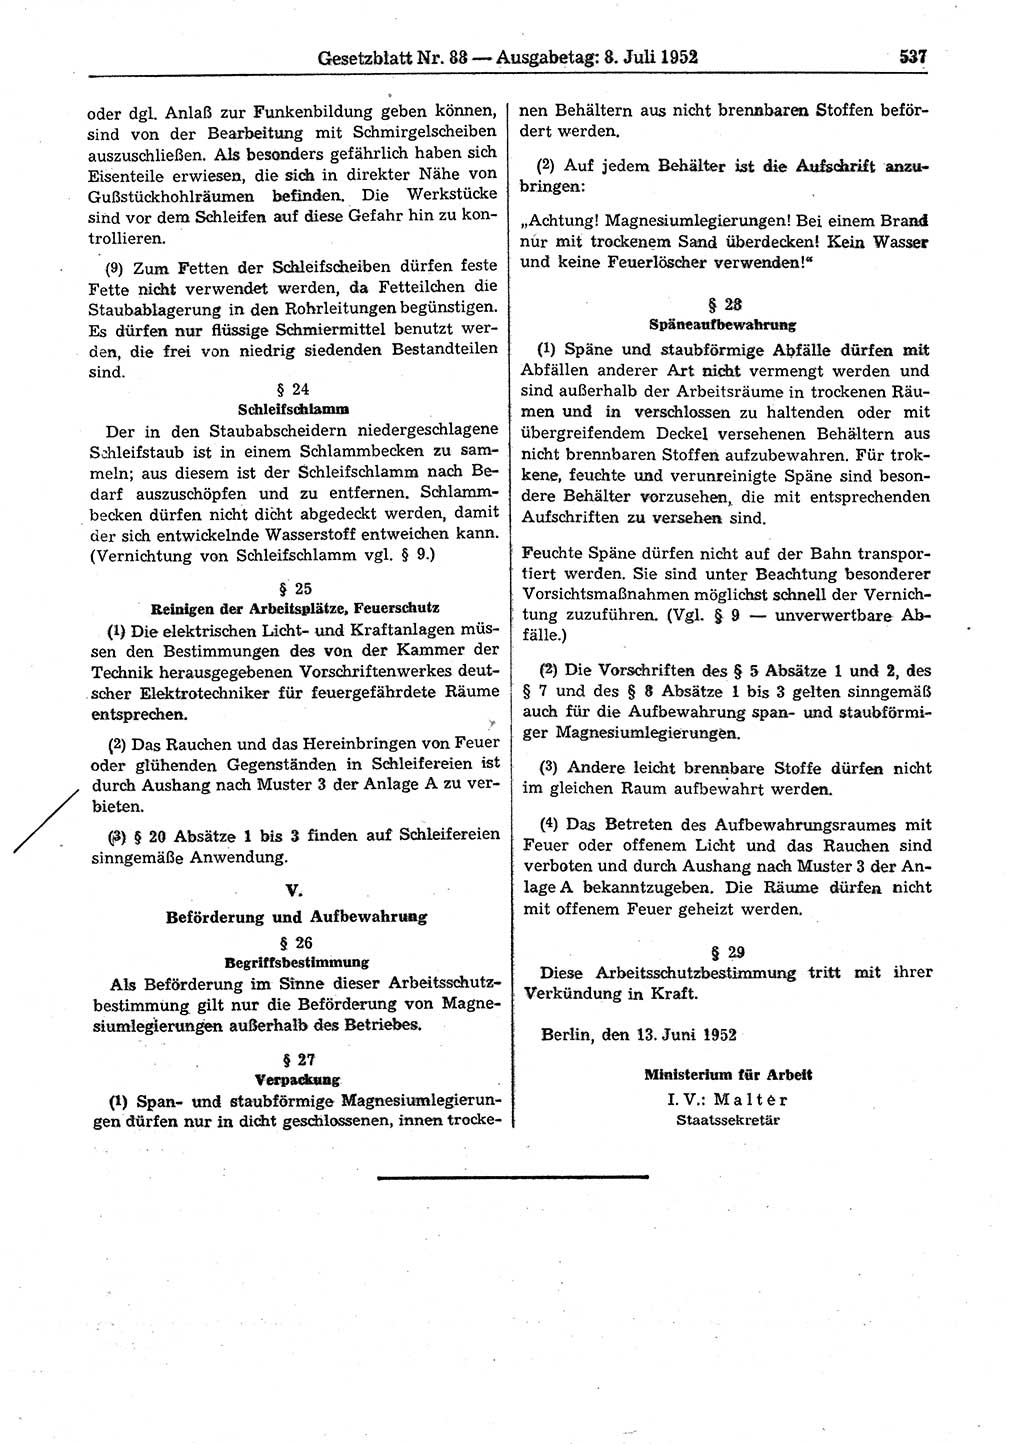 Gesetzblatt (GBl.) der Deutschen Demokratischen Republik (DDR) 1952, Seite 537 (GBl. DDR 1952, S. 537)